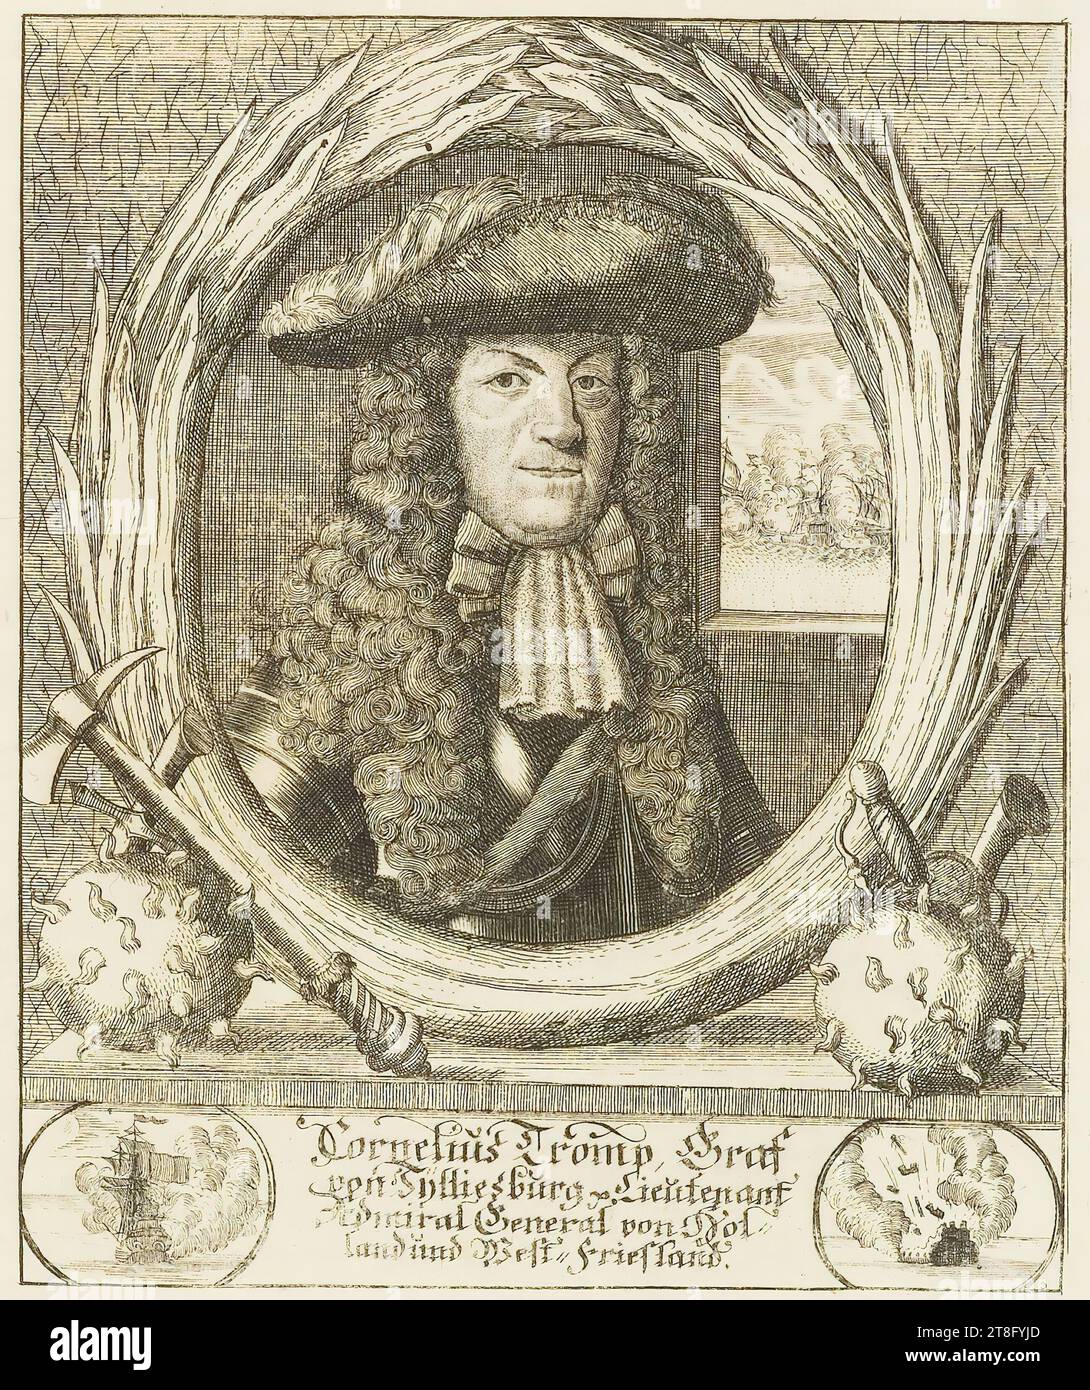 Cornelius Tromp, Count, von Sylliesburg & Lieutenant, Admiral General von Holland und and West,friesland Stock Photo